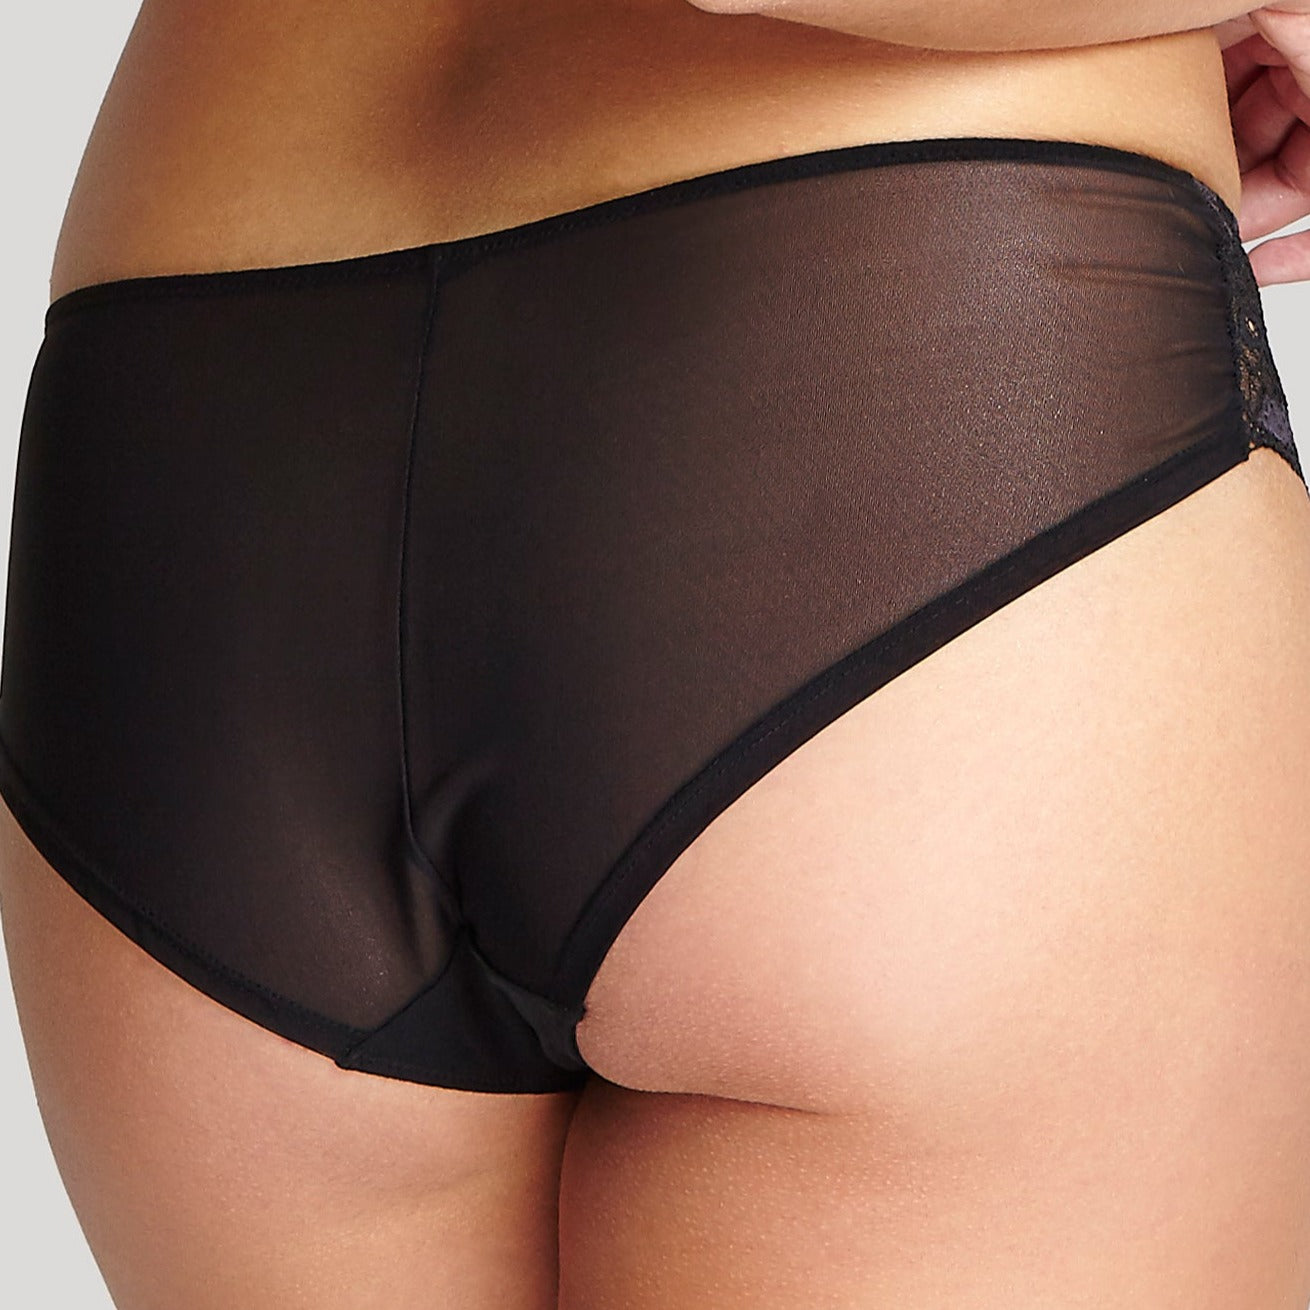 Clara Brief - 7253 Underwear Panache Lingerie   